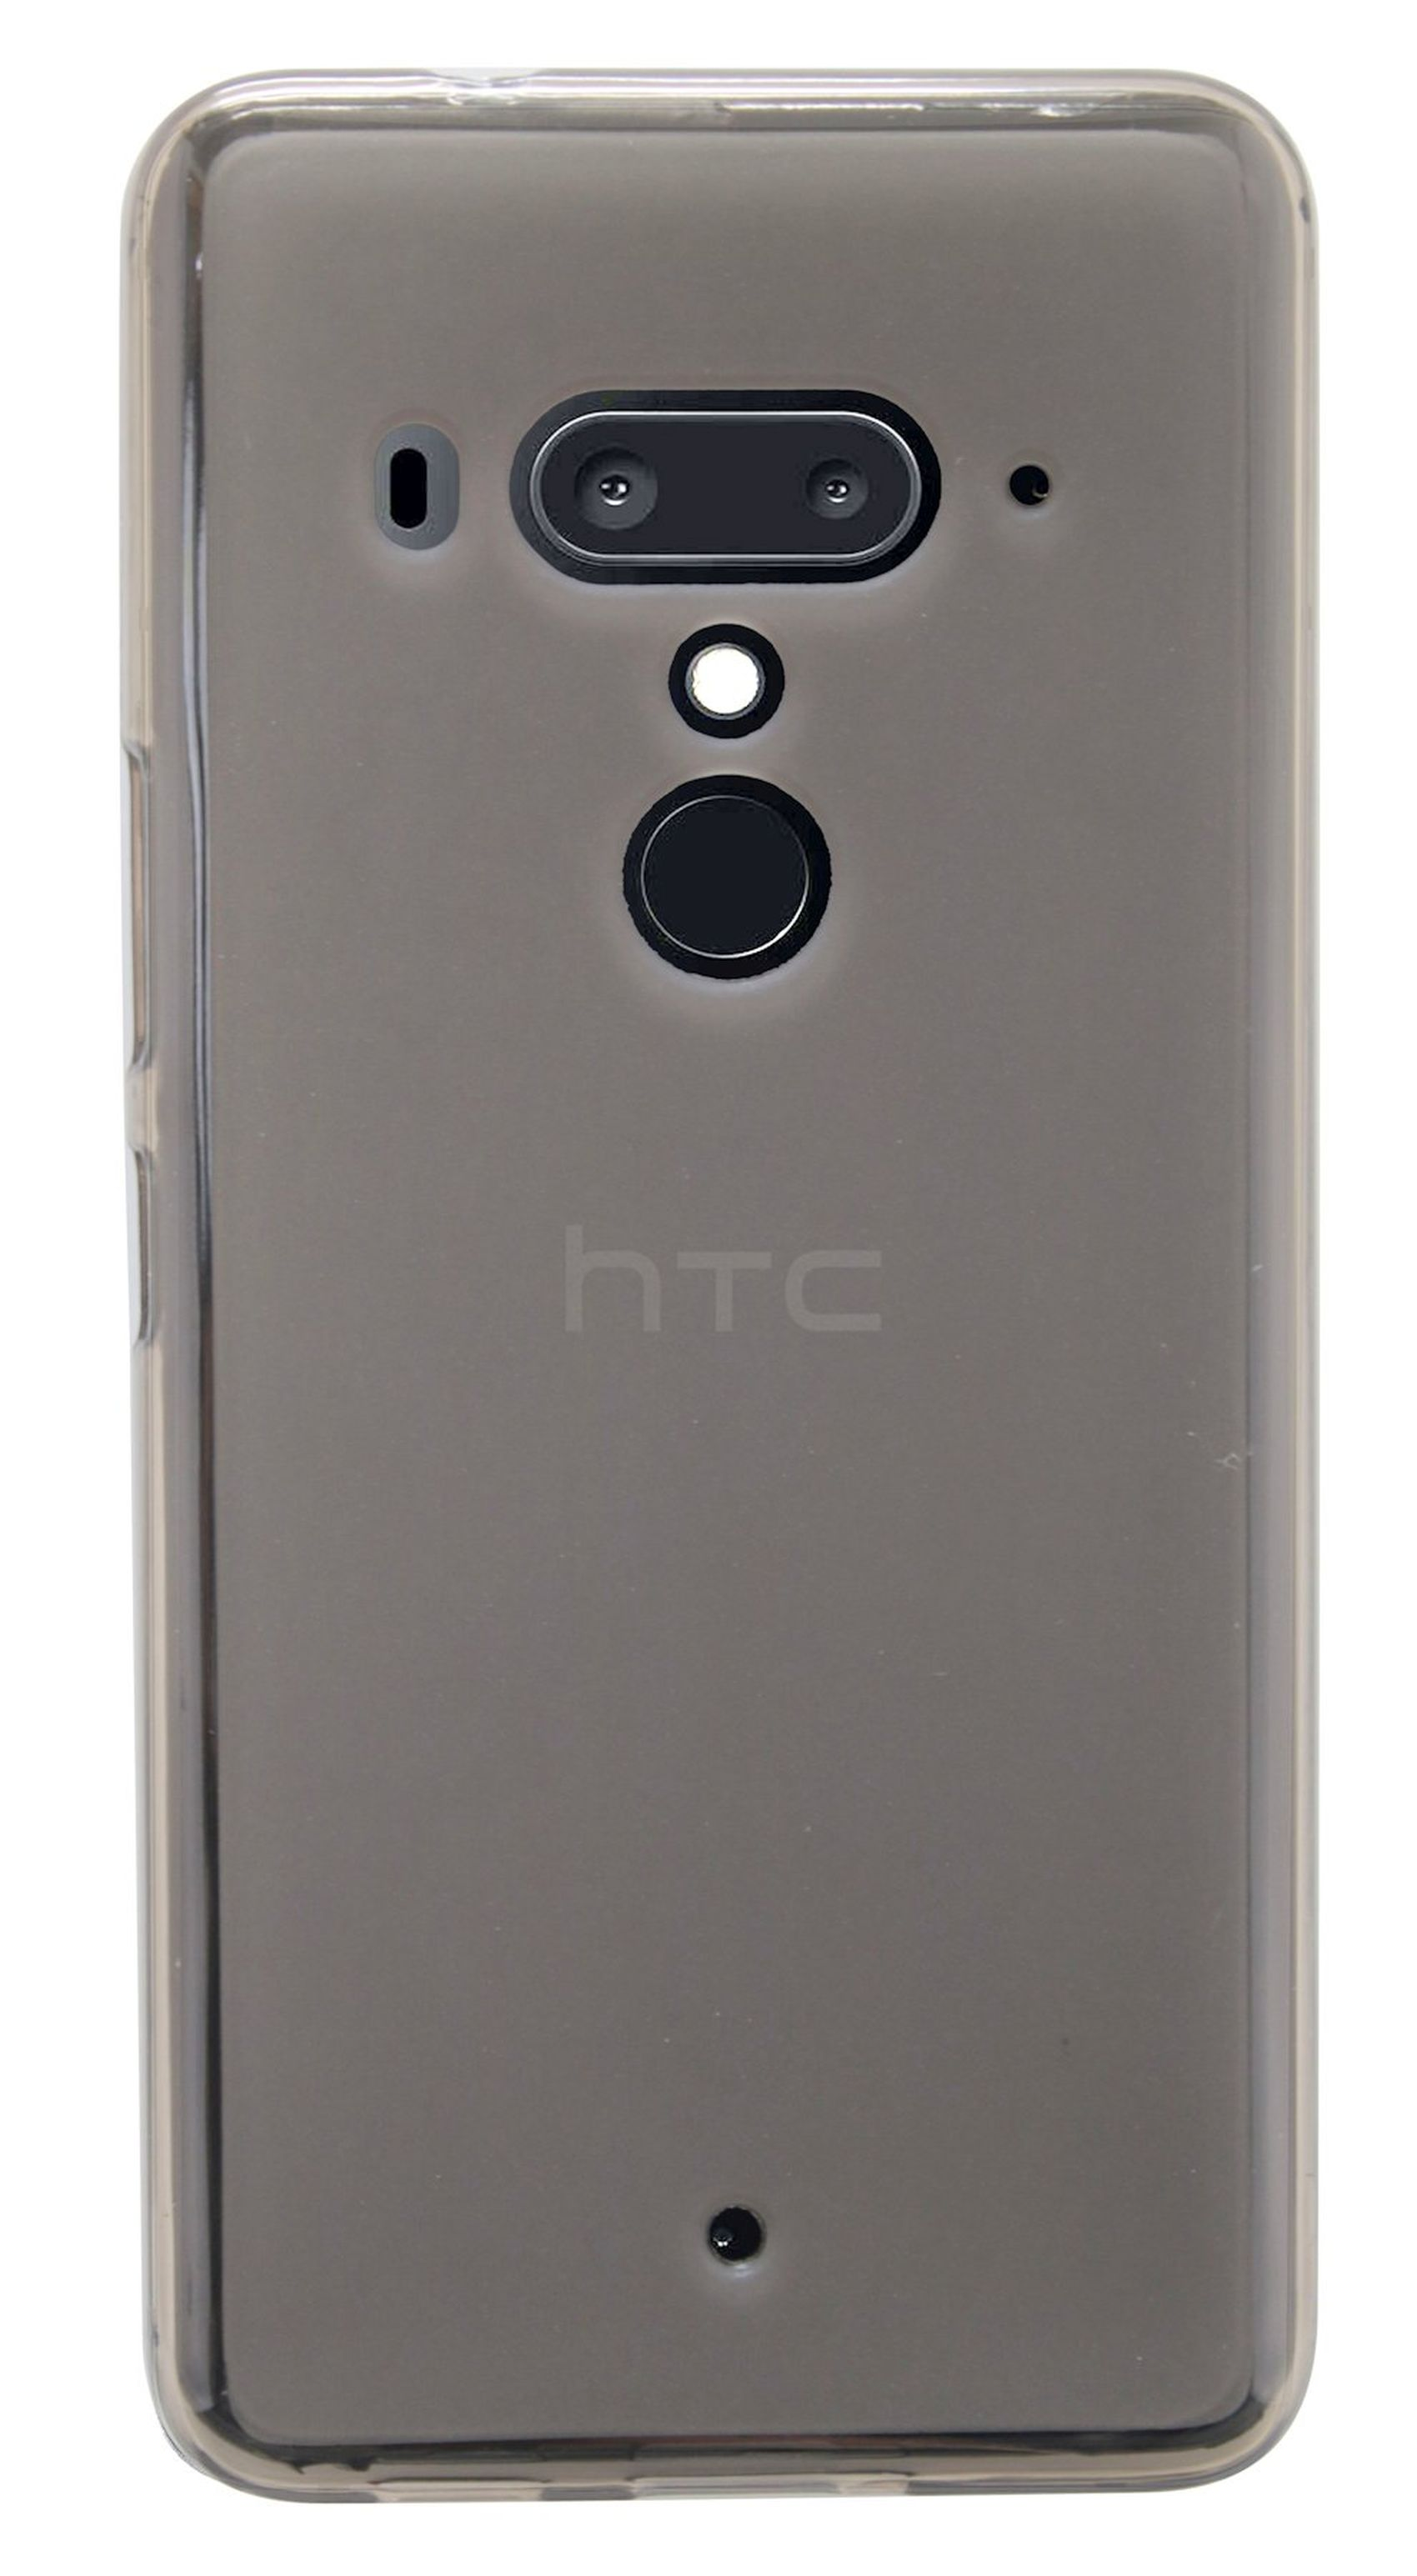 TPU Case Schutz Handy cofi1453® HTC, (Plus) Silikon Soft Cover Smoke, U12+, mit Hülle Basic Bumper, Grau COFI kompatibel U12+ HTC